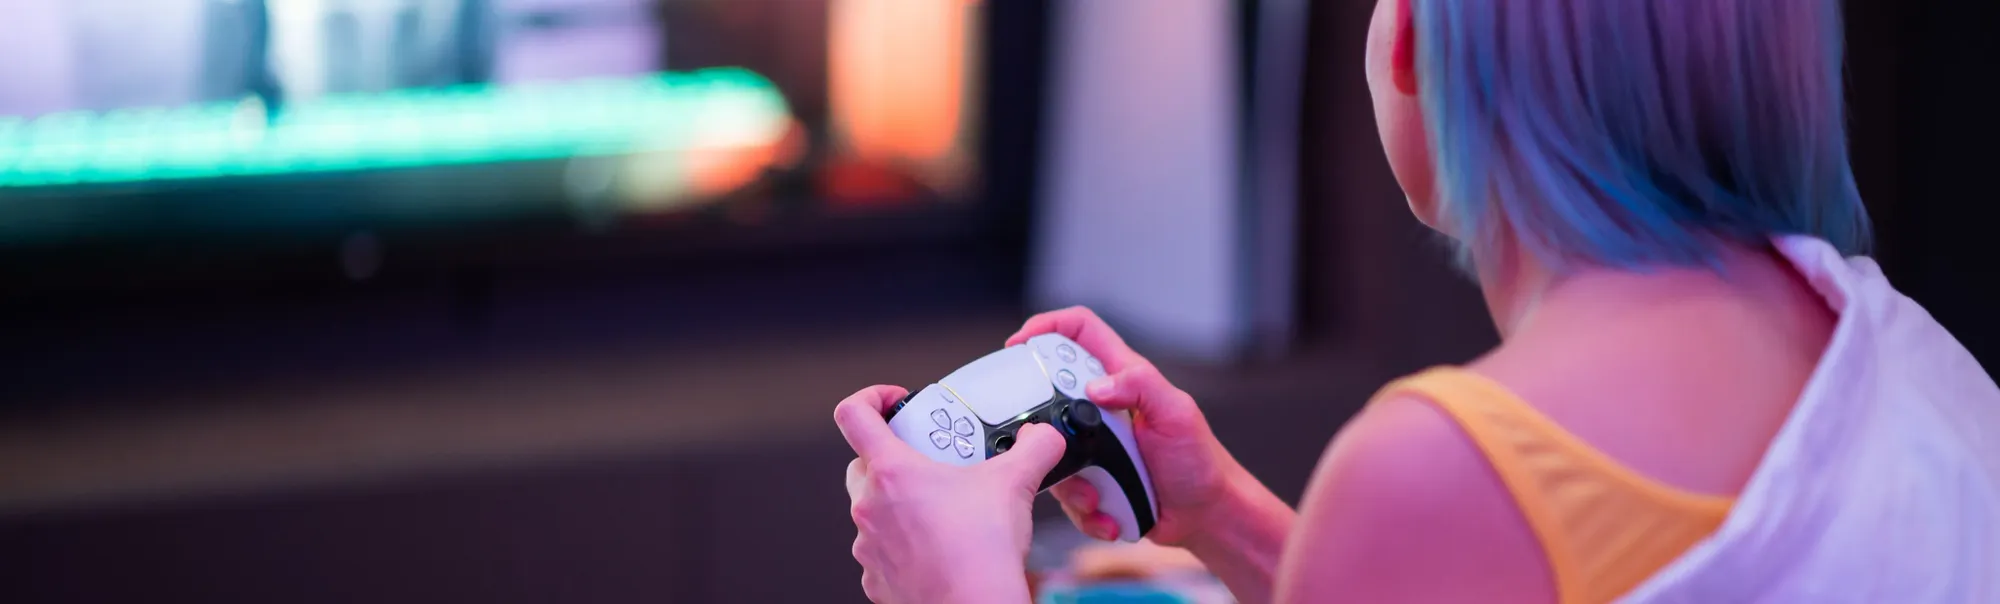 Controle Sony DualSense Nova Pink - PS5 Usado - Mundo Joy Games - Venda,  Compra e Assistência em Games e Informática